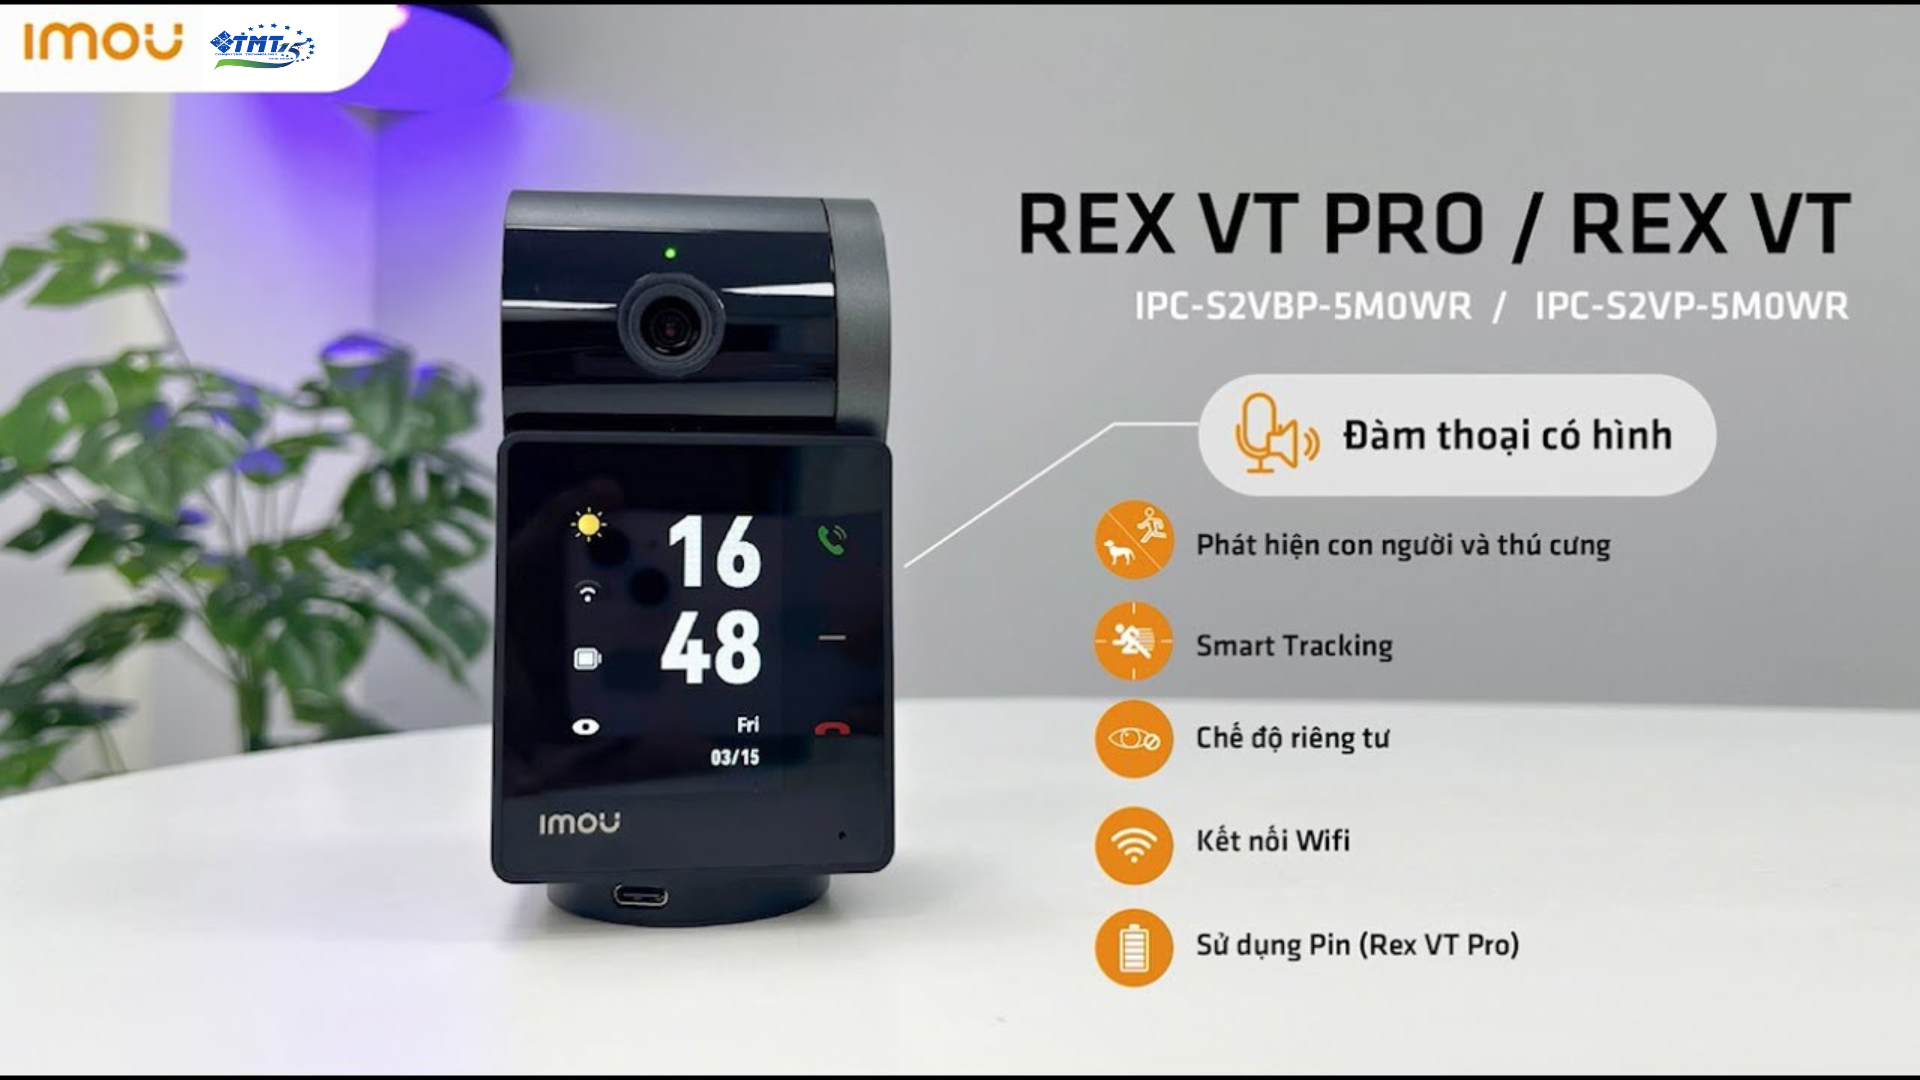 Camera REX VT Pro iMOU 3K Dùng Pin IPC-S2VBP-5M0WR